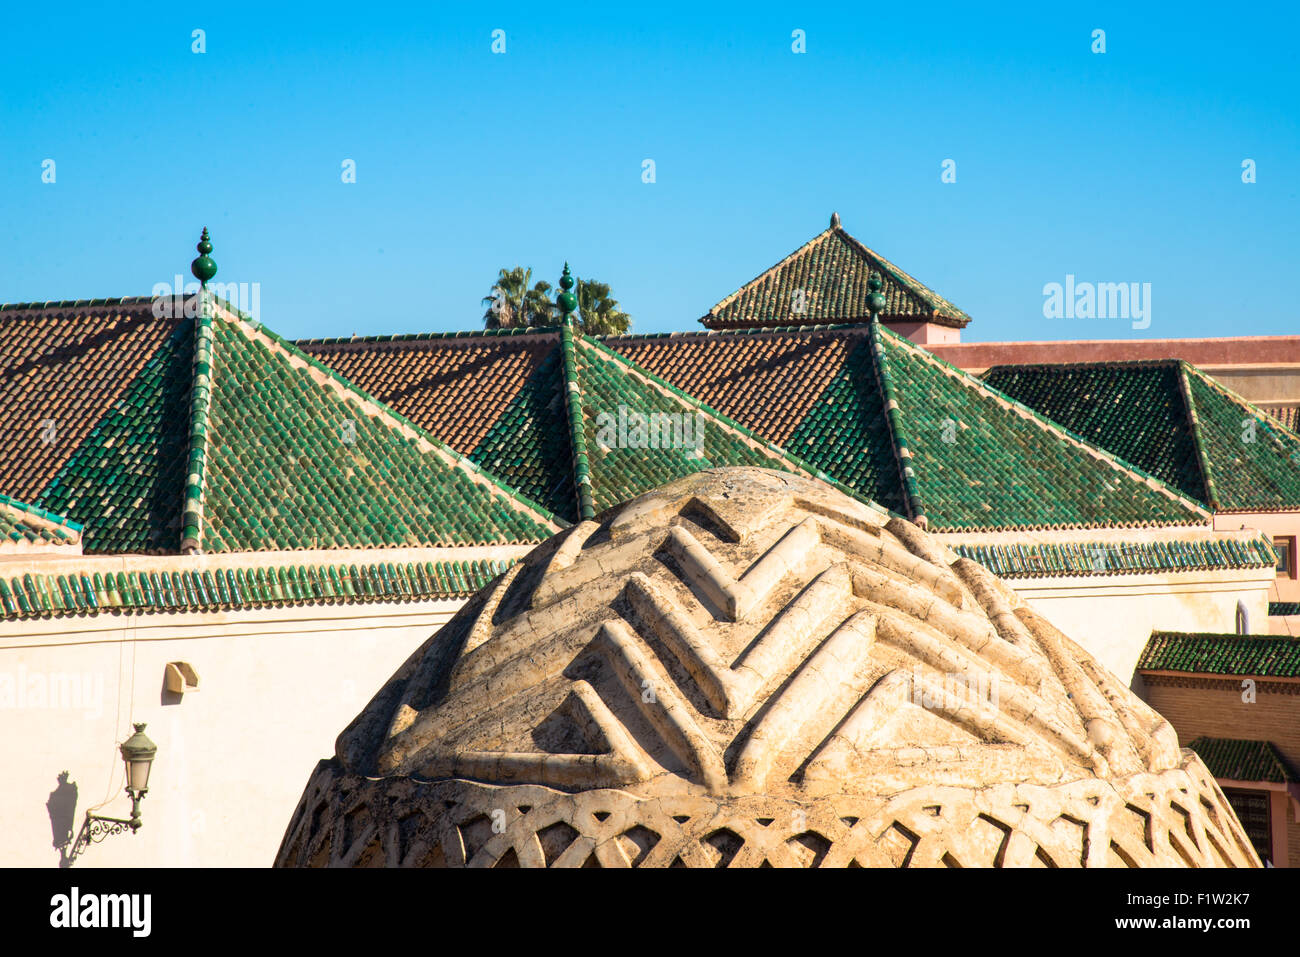 Piastrelle verdi in corrispondenza di tetti a Marrakech Maroc Foto Stock